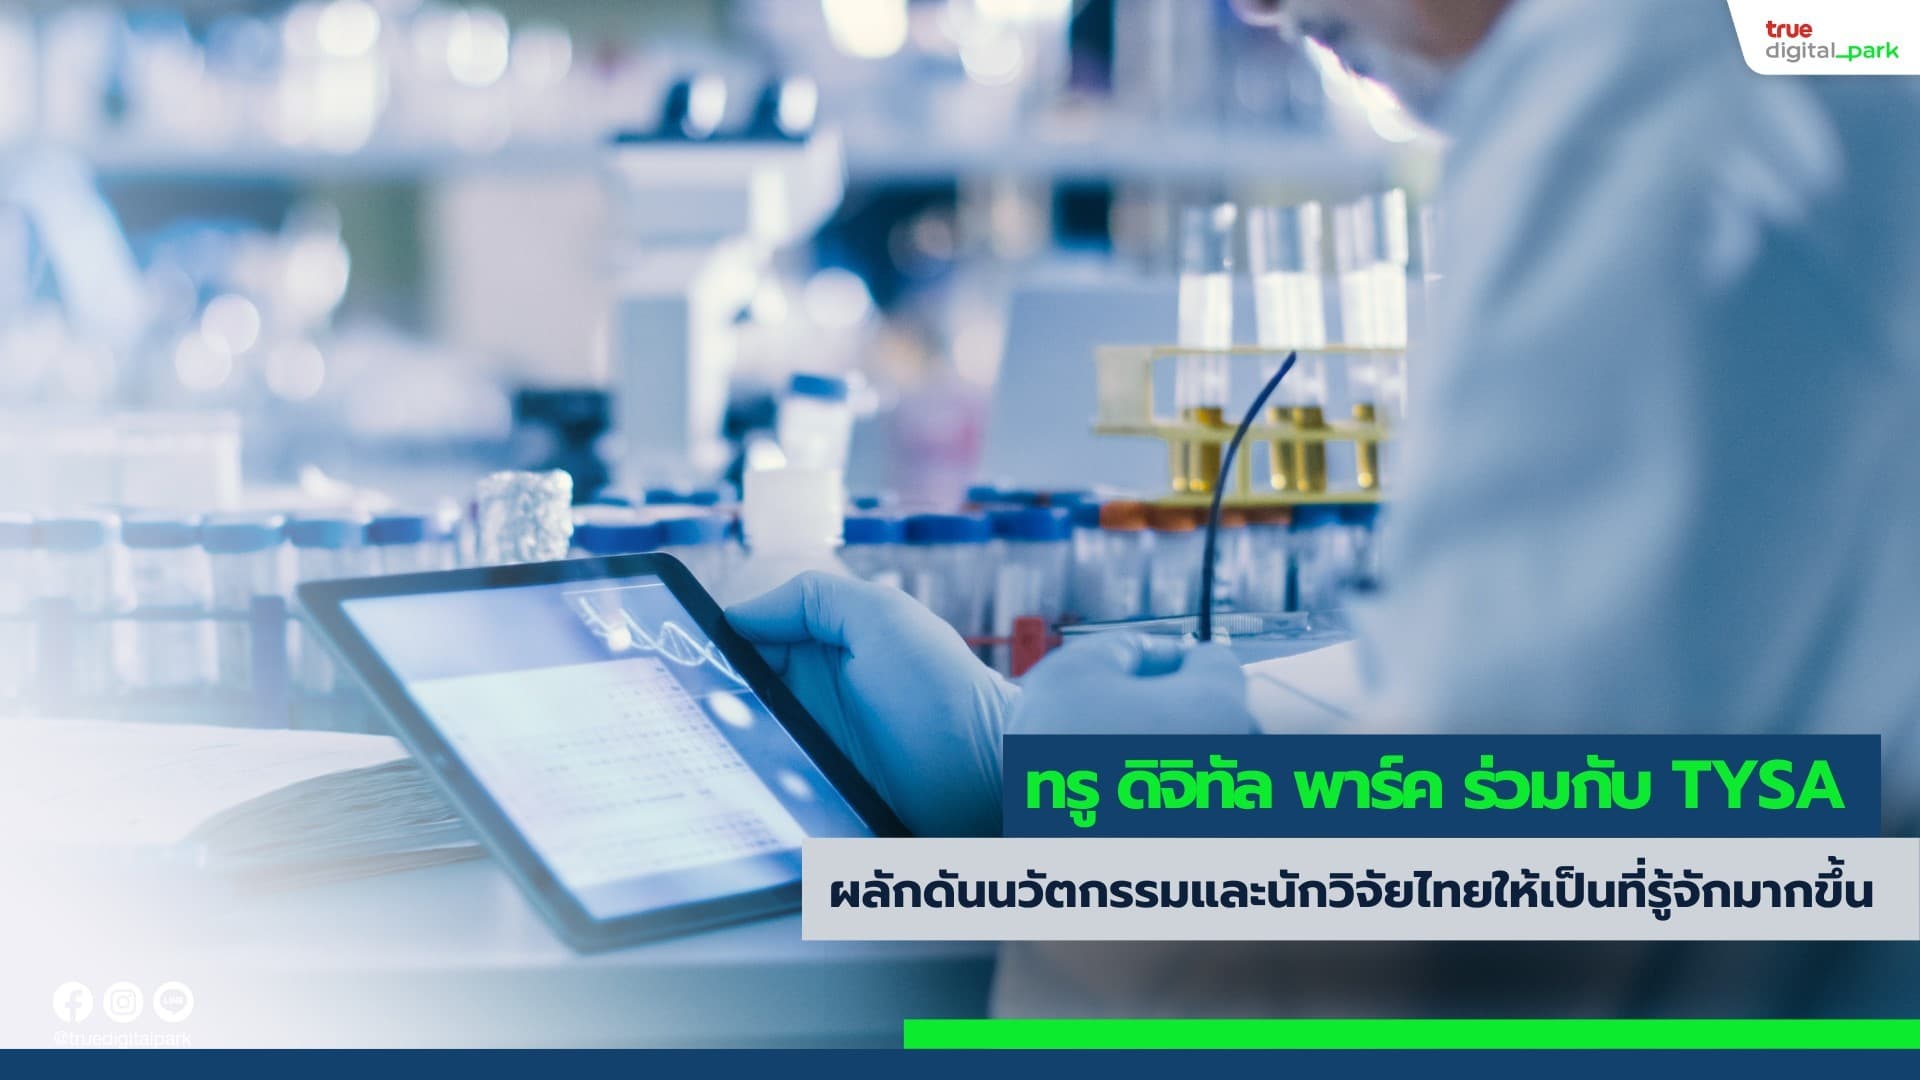 ทรู ดิจิทัล พาร์ค ร่วมมือกับ TYSA ผลักดันนวัตกรรมและนักวิจัยไทยให้เป็นที่รู้จักมากขึ้น